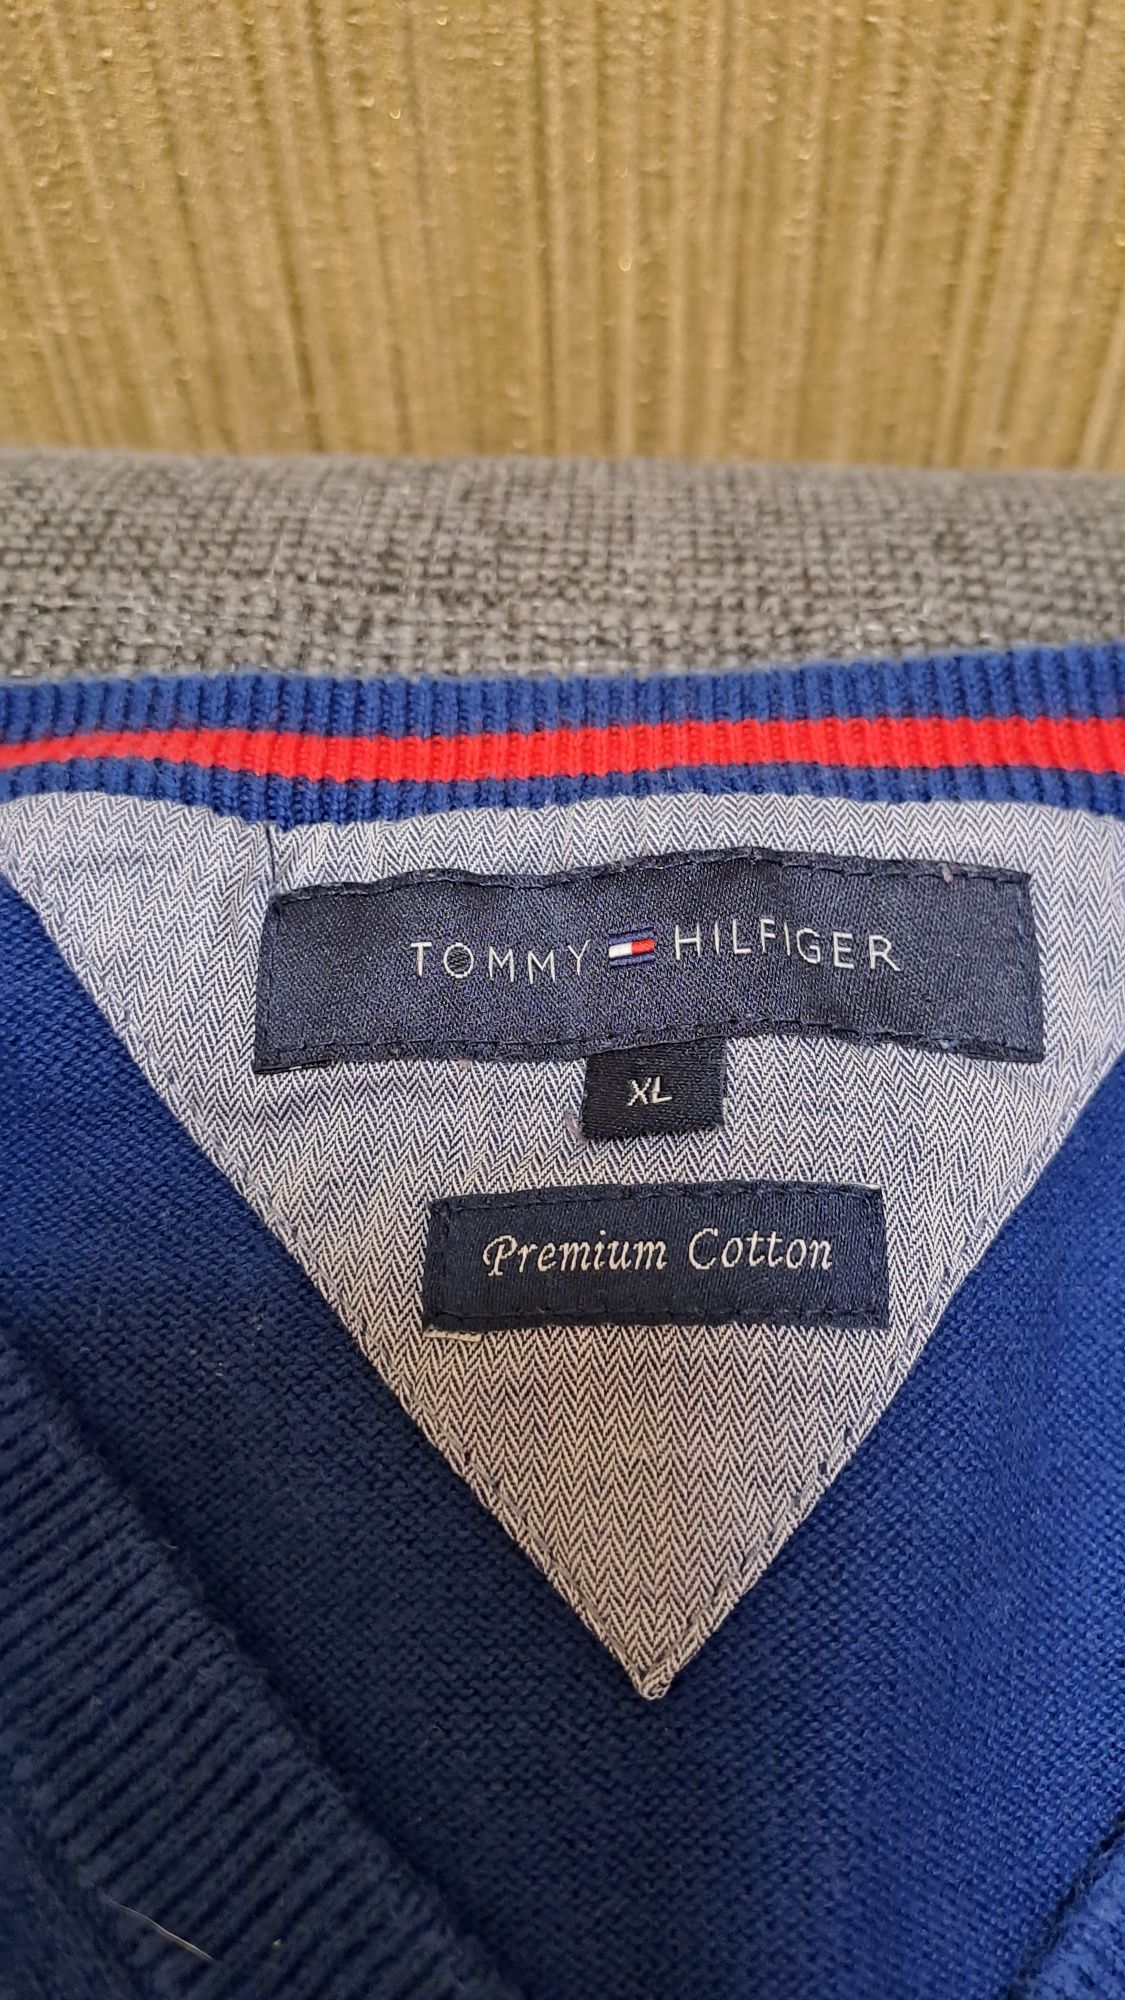 Пуловер Tommy Hilfiger ХЛ